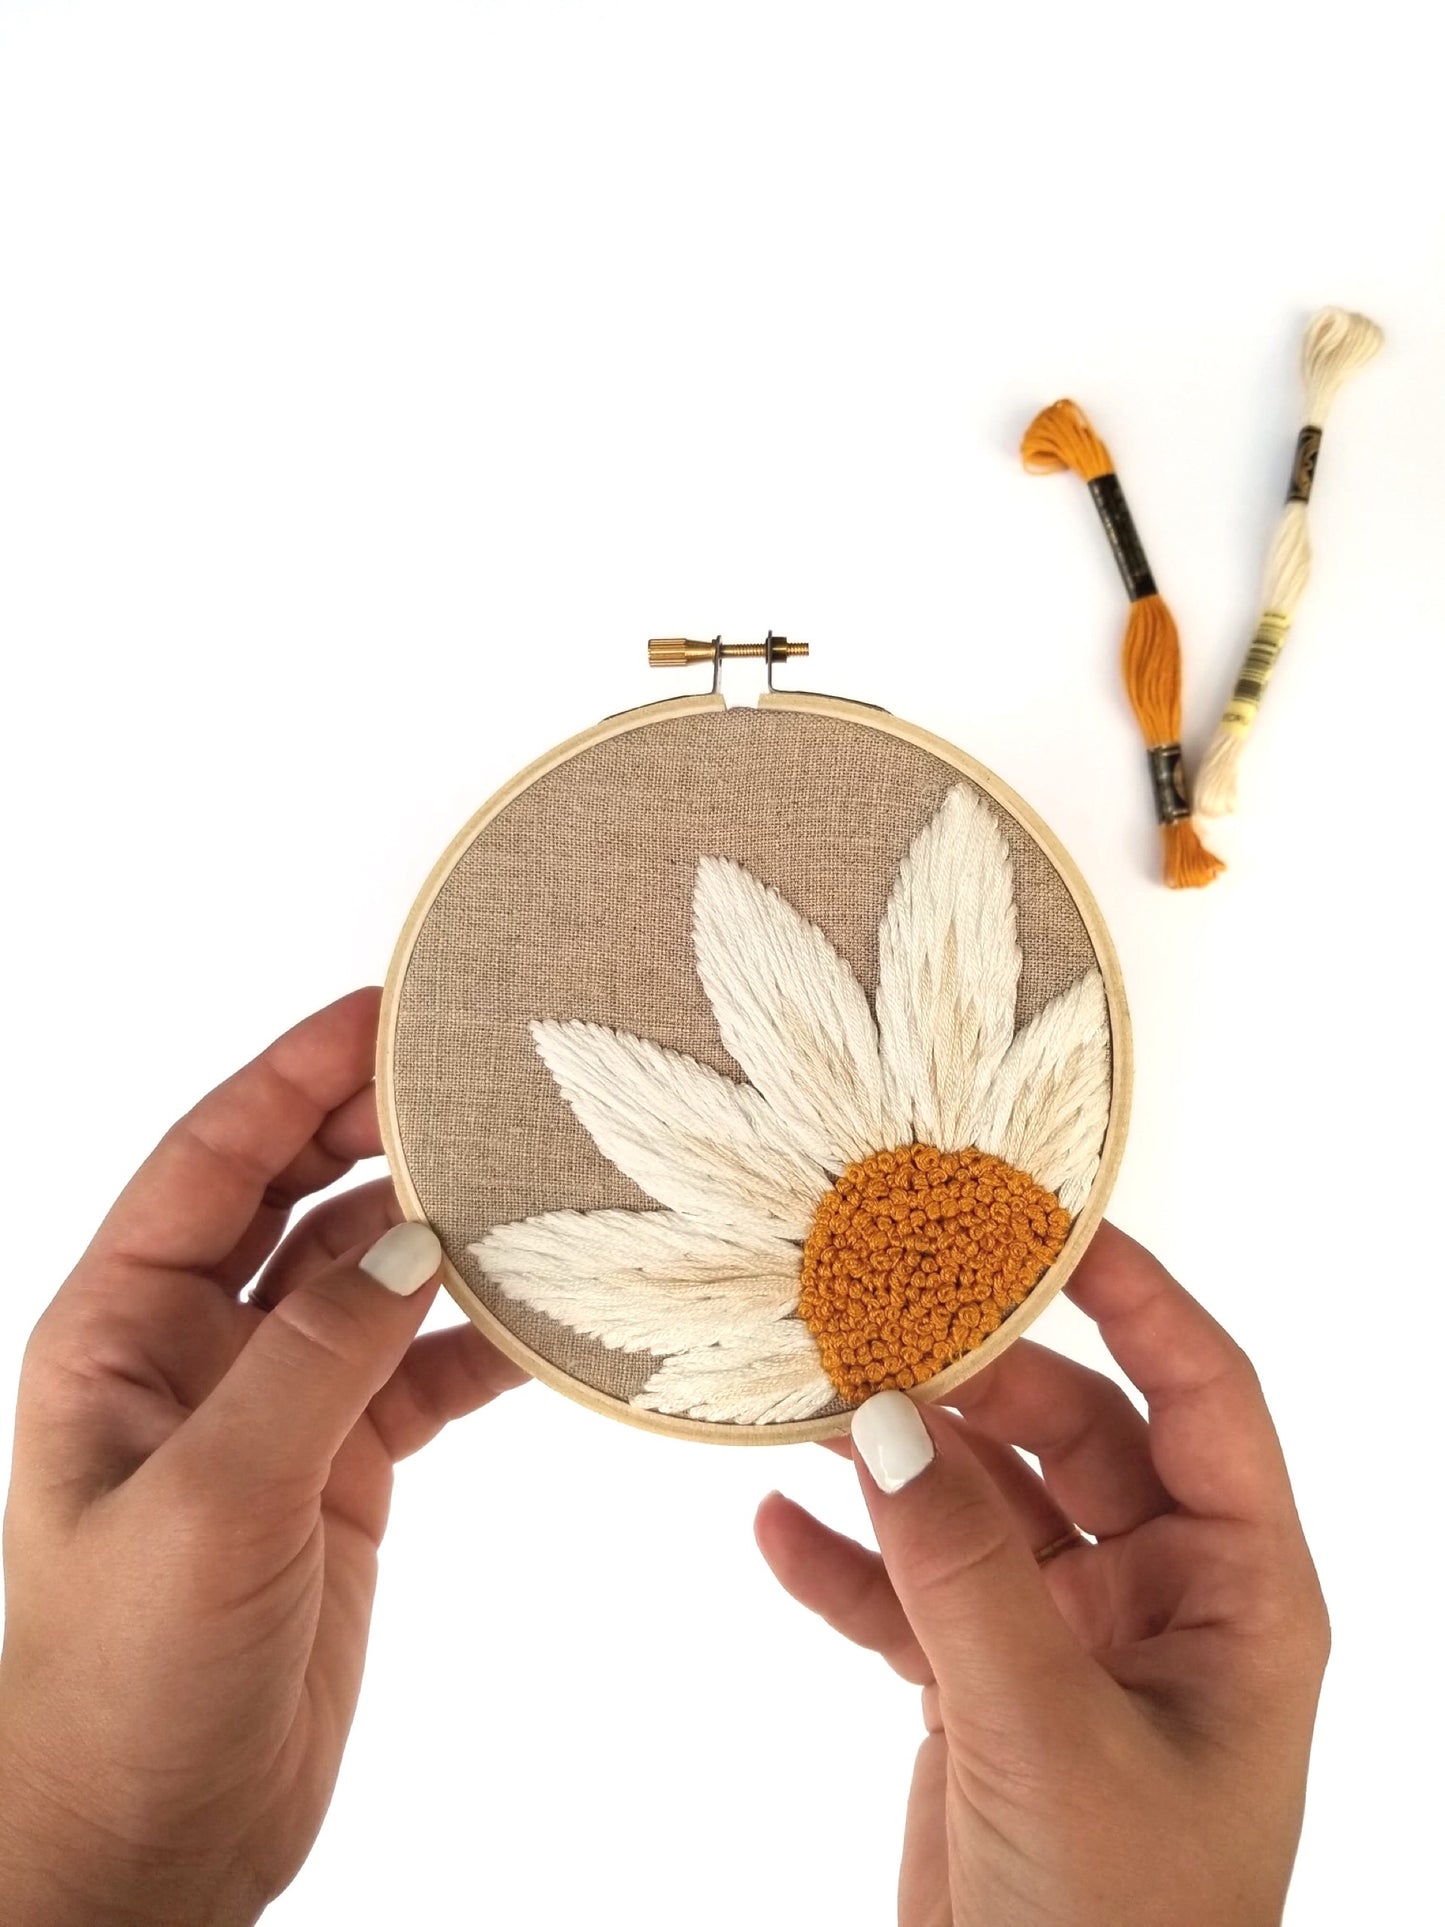 Daisy Petals Embroidery Kit